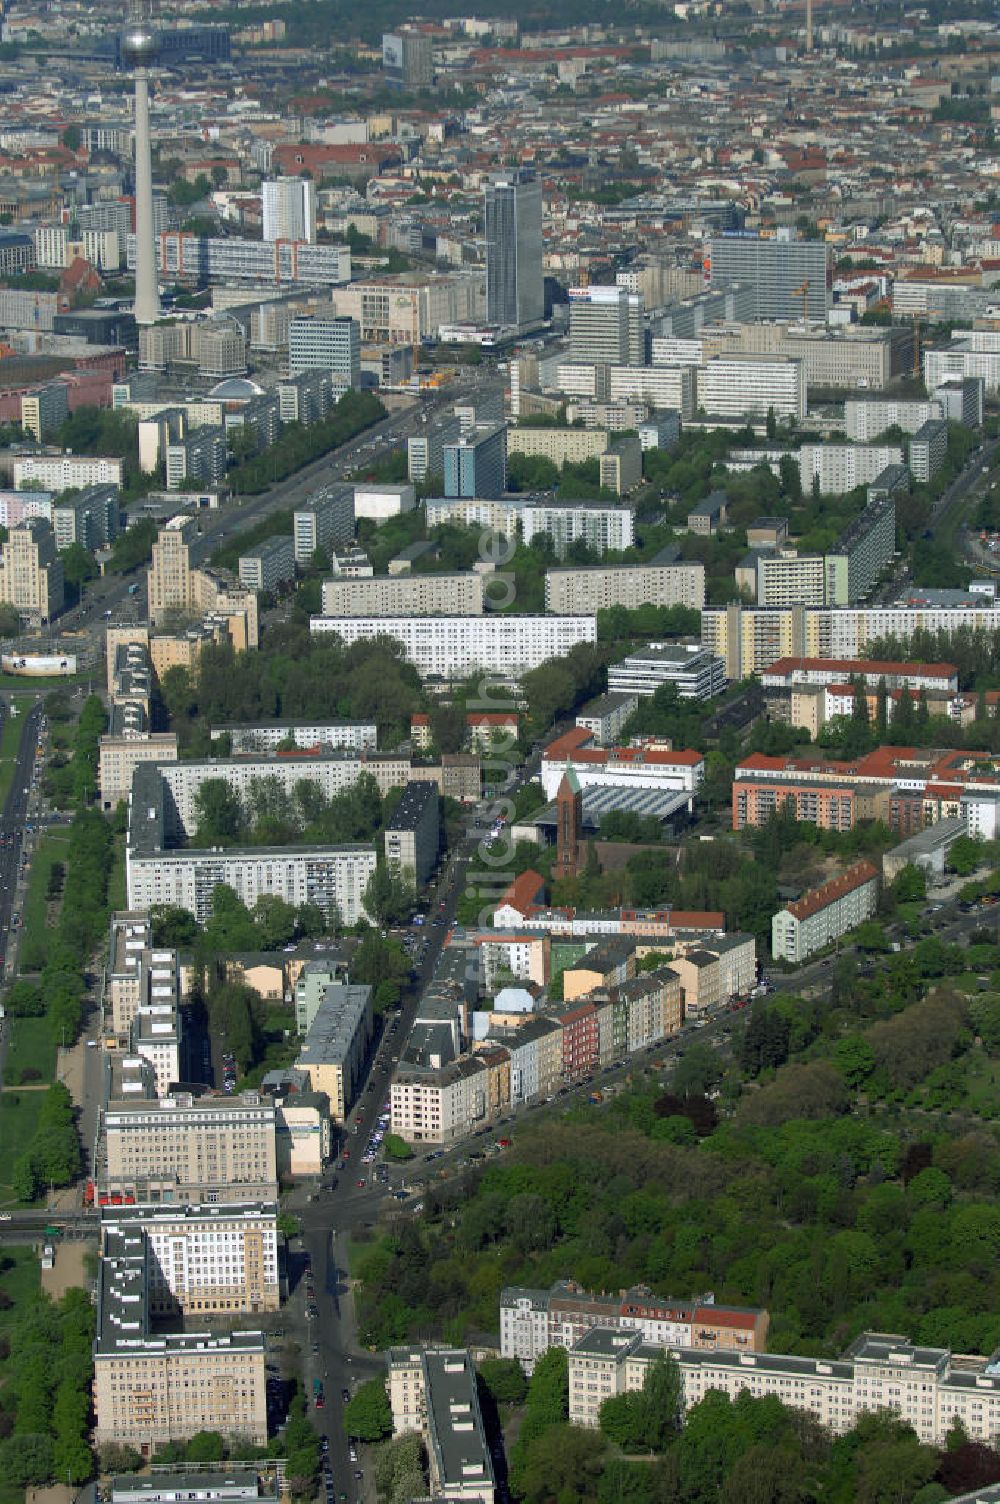 Luftbild Berlin - Wohngebiet an derAuerstrasse 1 / Weidenweg angrenzend an der Strasse der Pariser Kommune und der Karl-Marx-Allee in Berlin-Friedrichshain